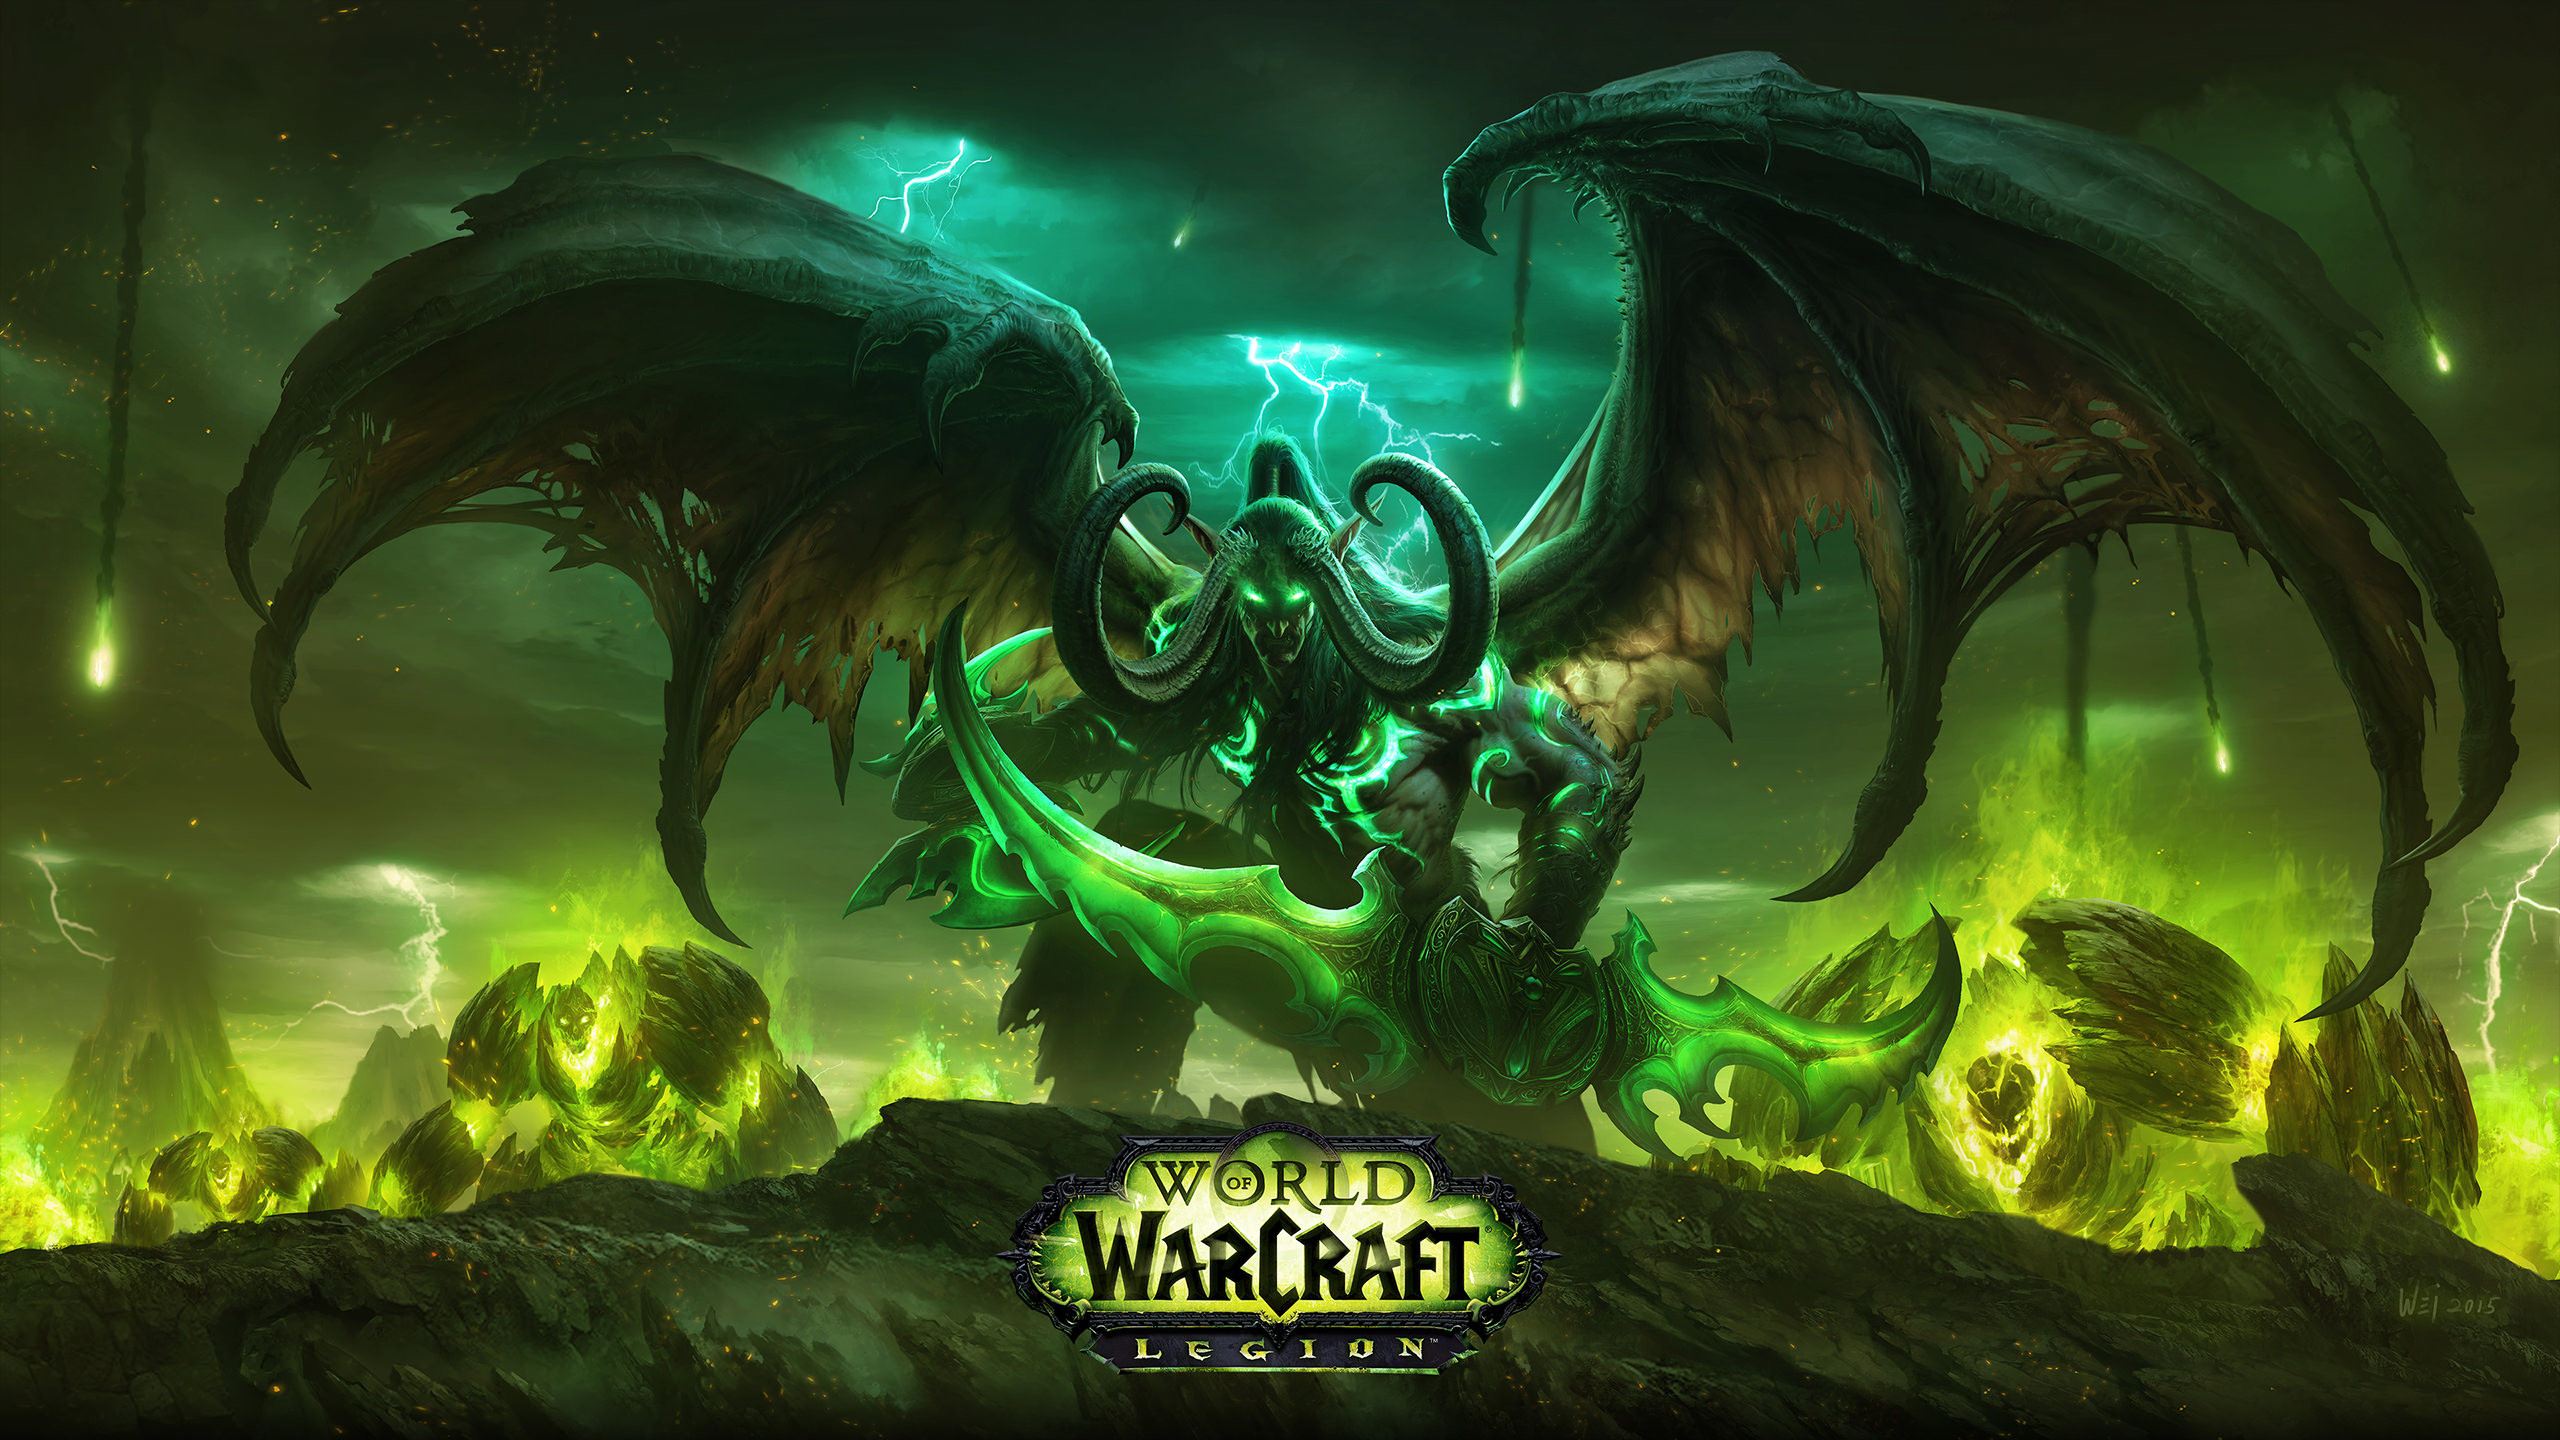 2560x1440 World of Warcraft HD wallpaper dump, enjoy :)